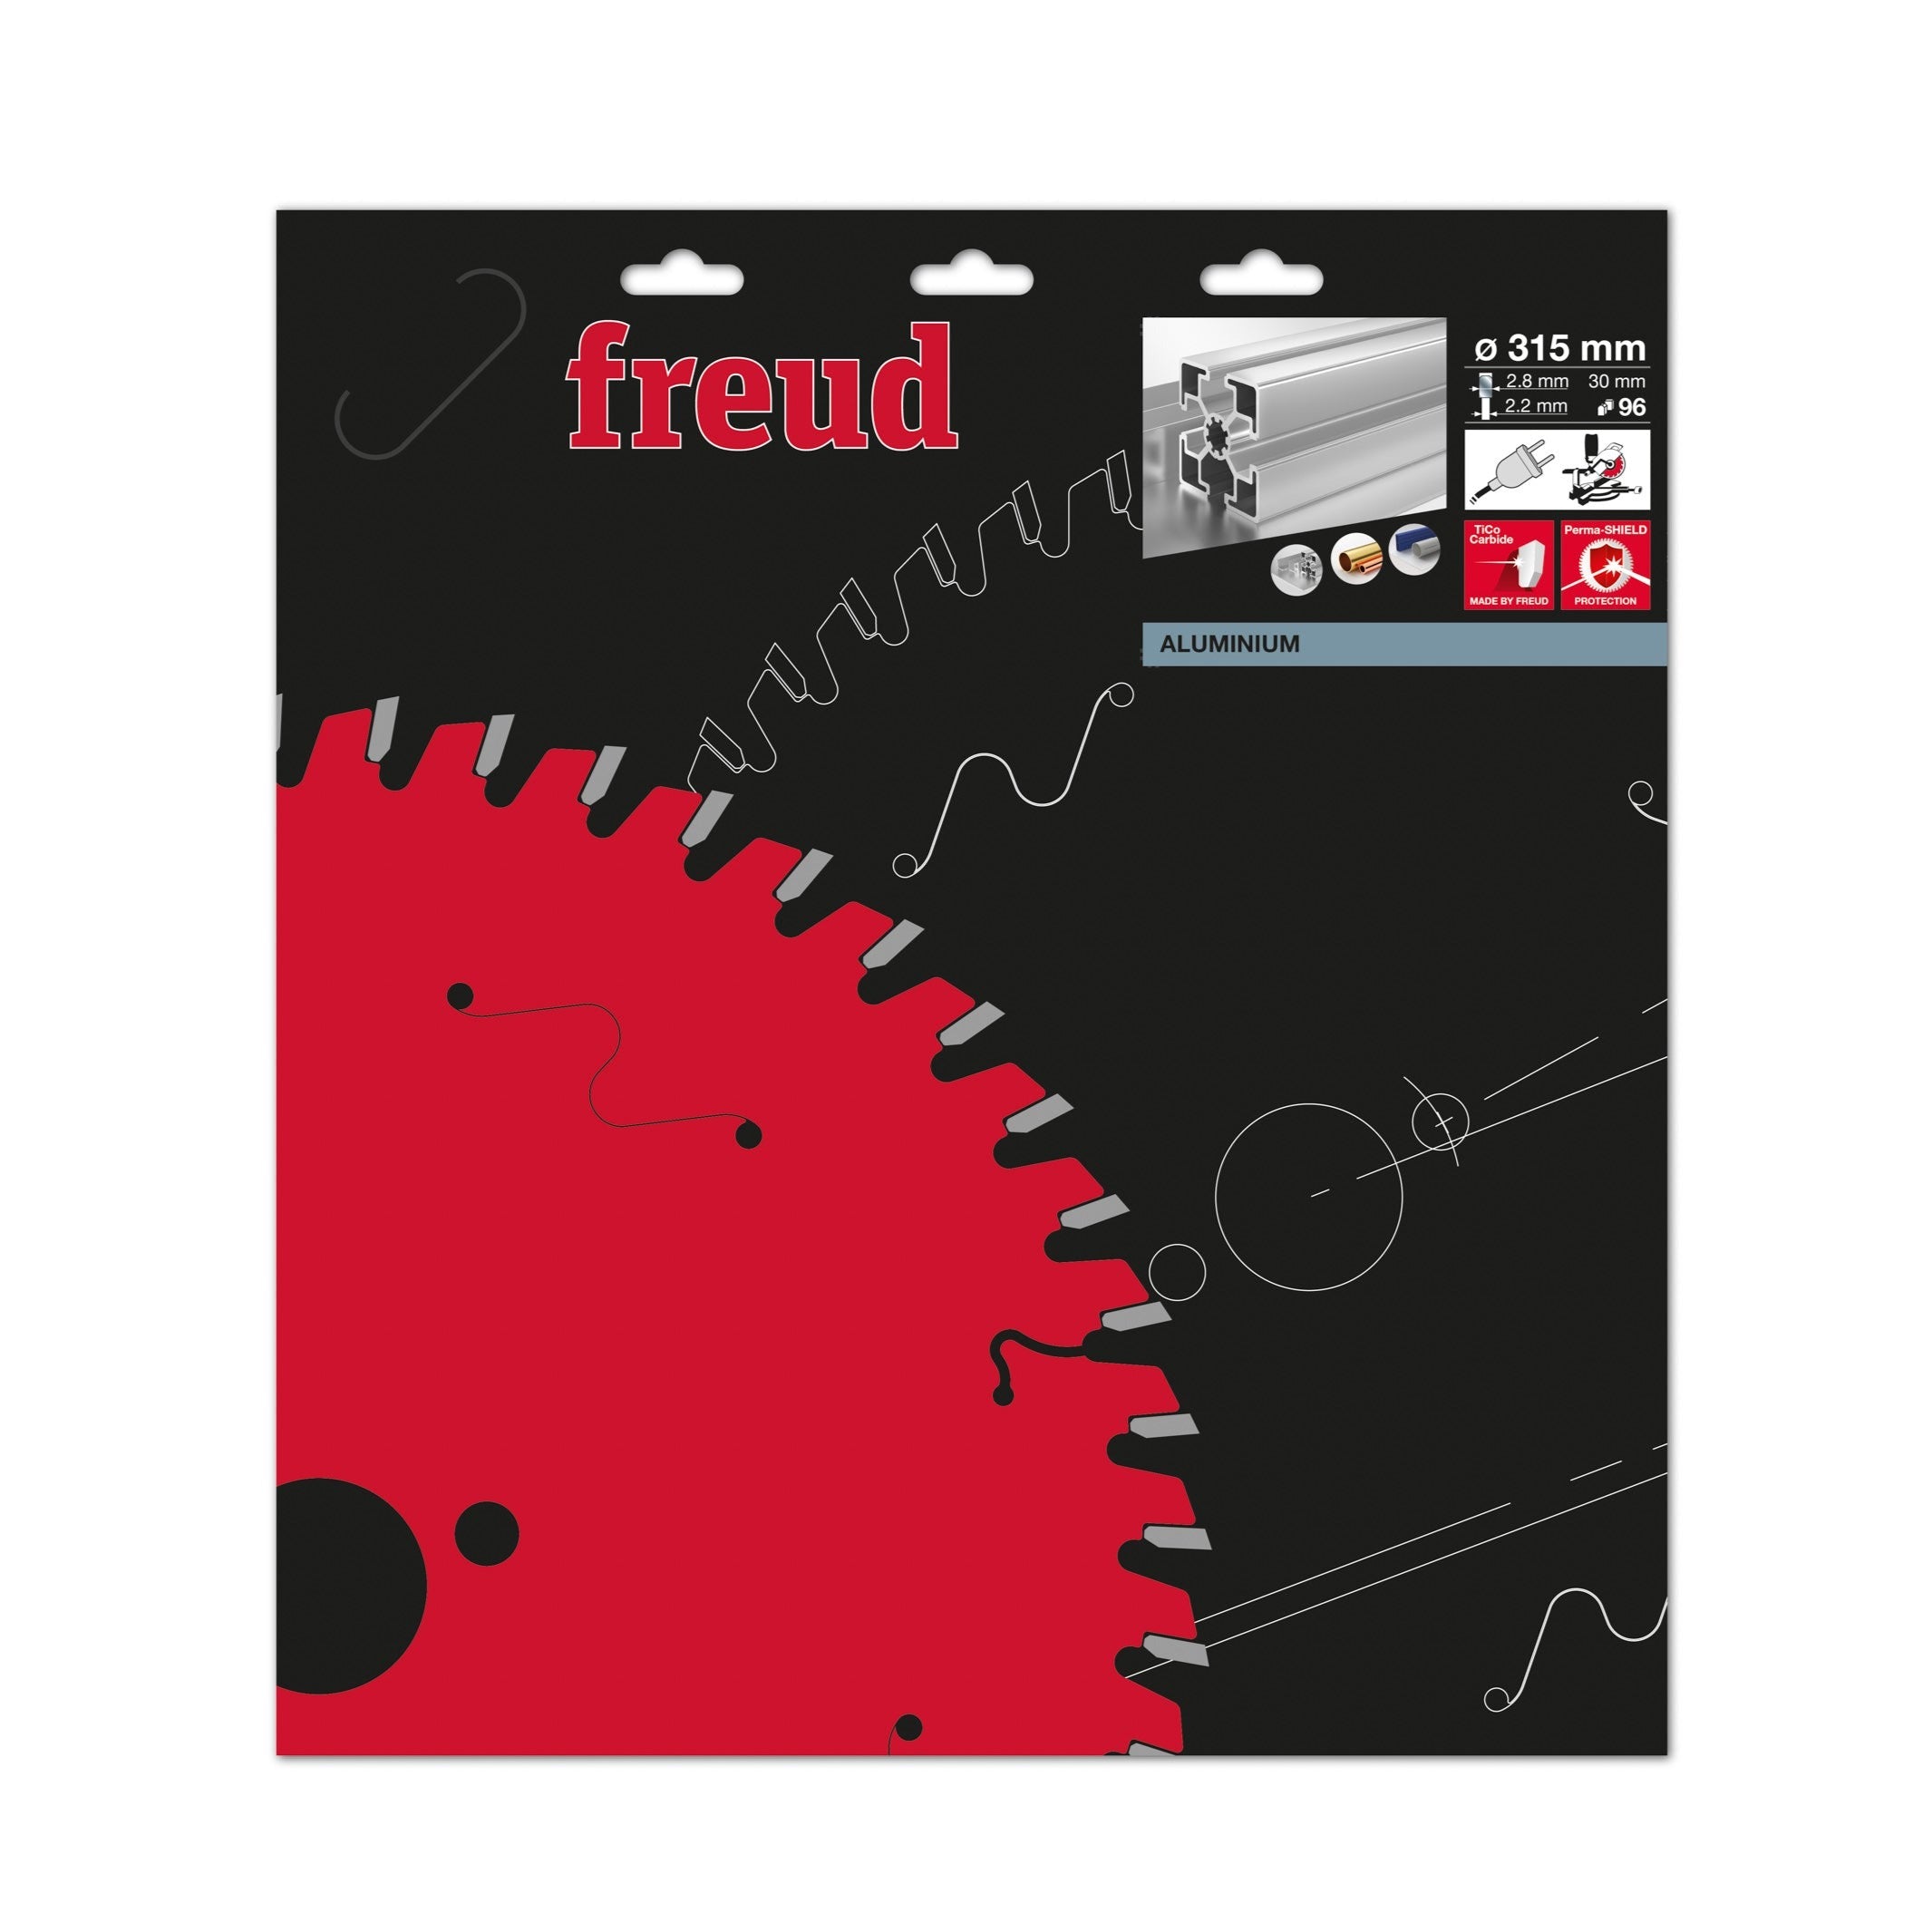 Freud Circular saw blade HM 315 x 2.8/2.2 x 30 mm, Z=96 FR30A001M